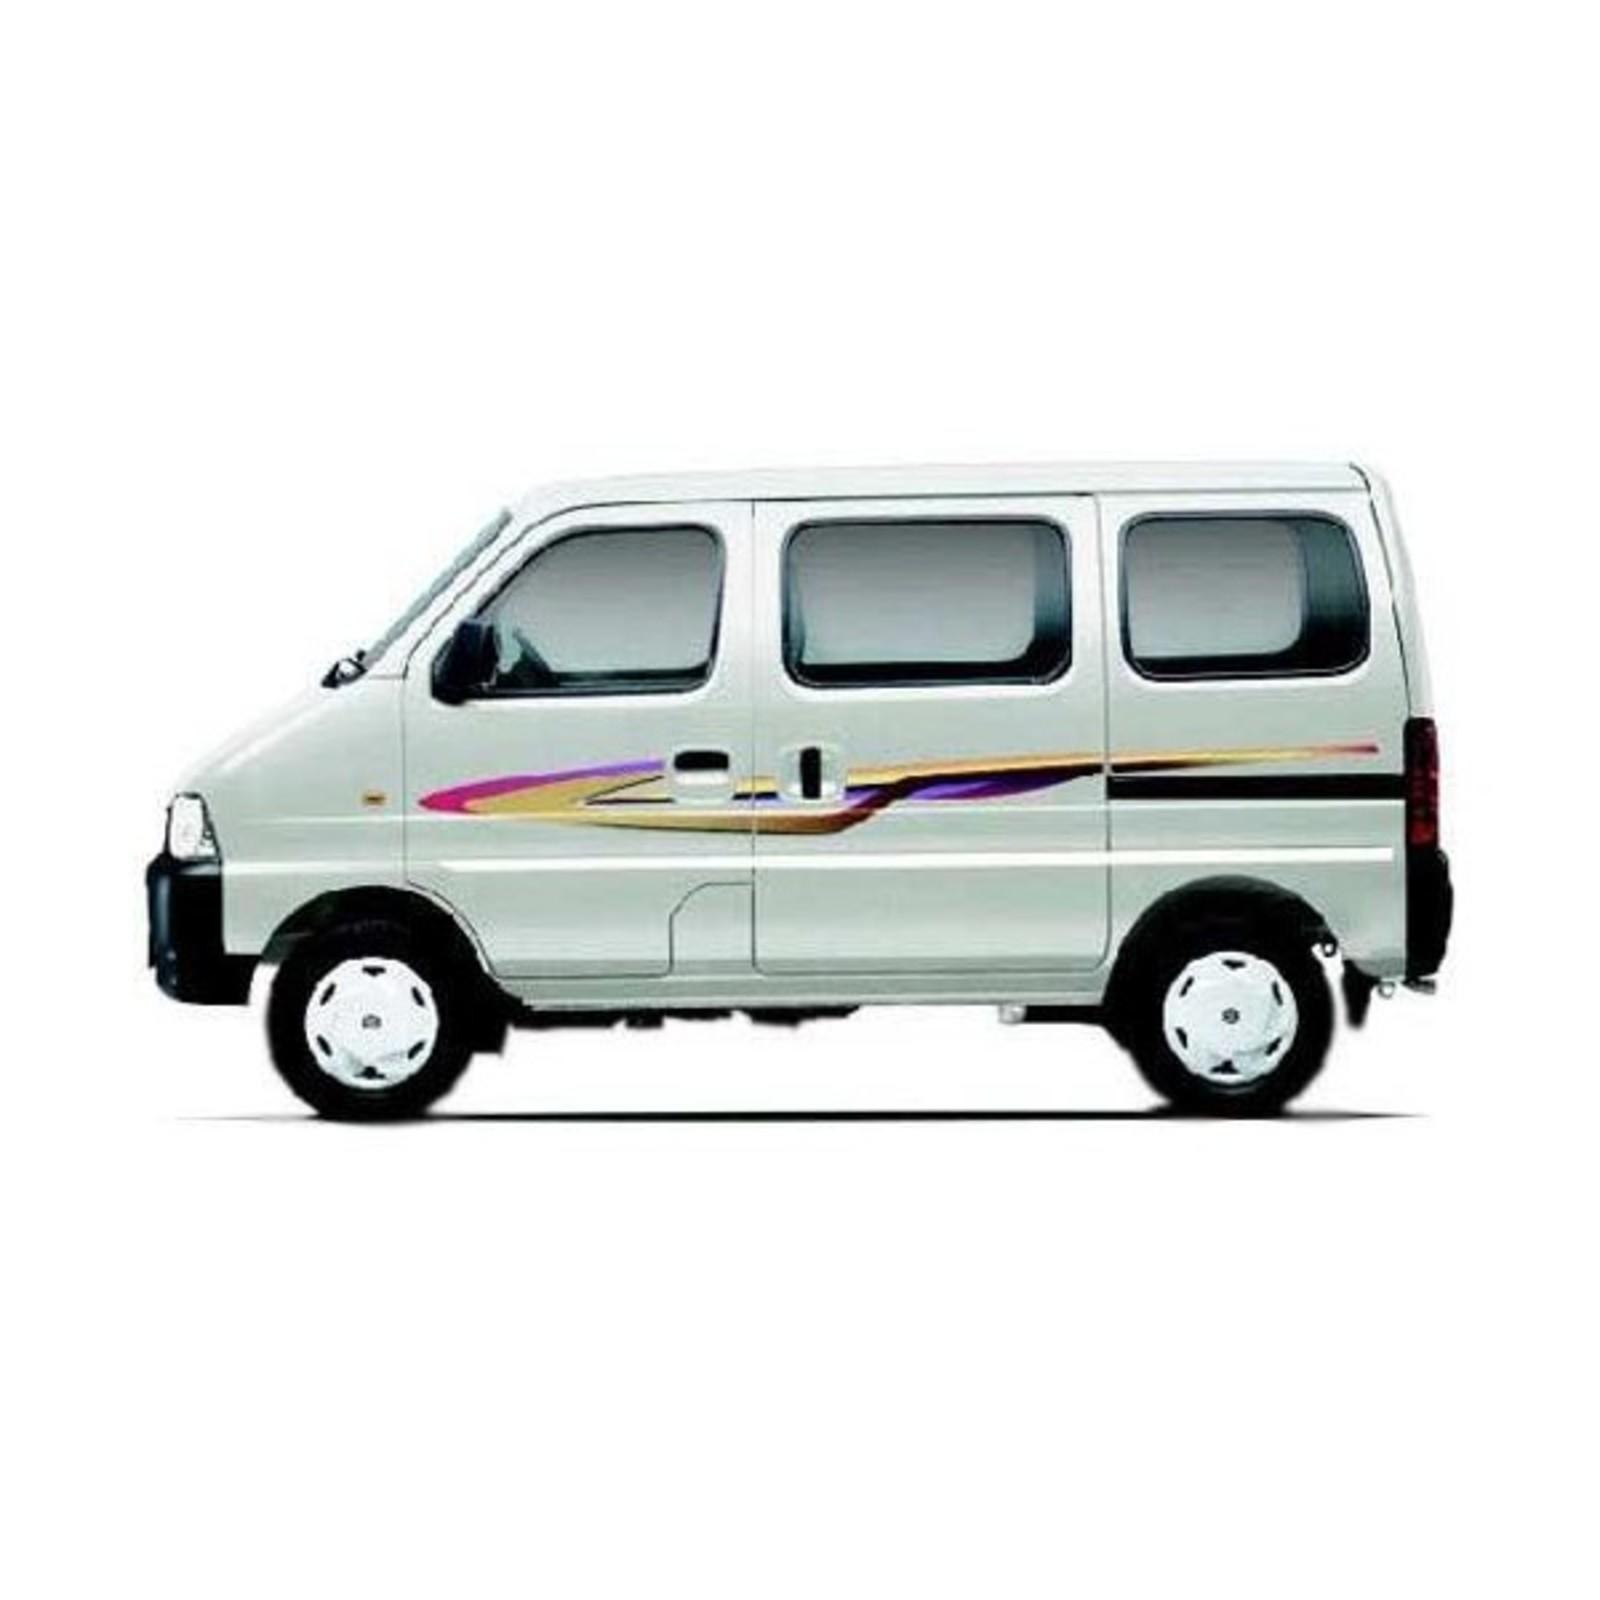 Maruti Suzuki Eeco Review Speed India